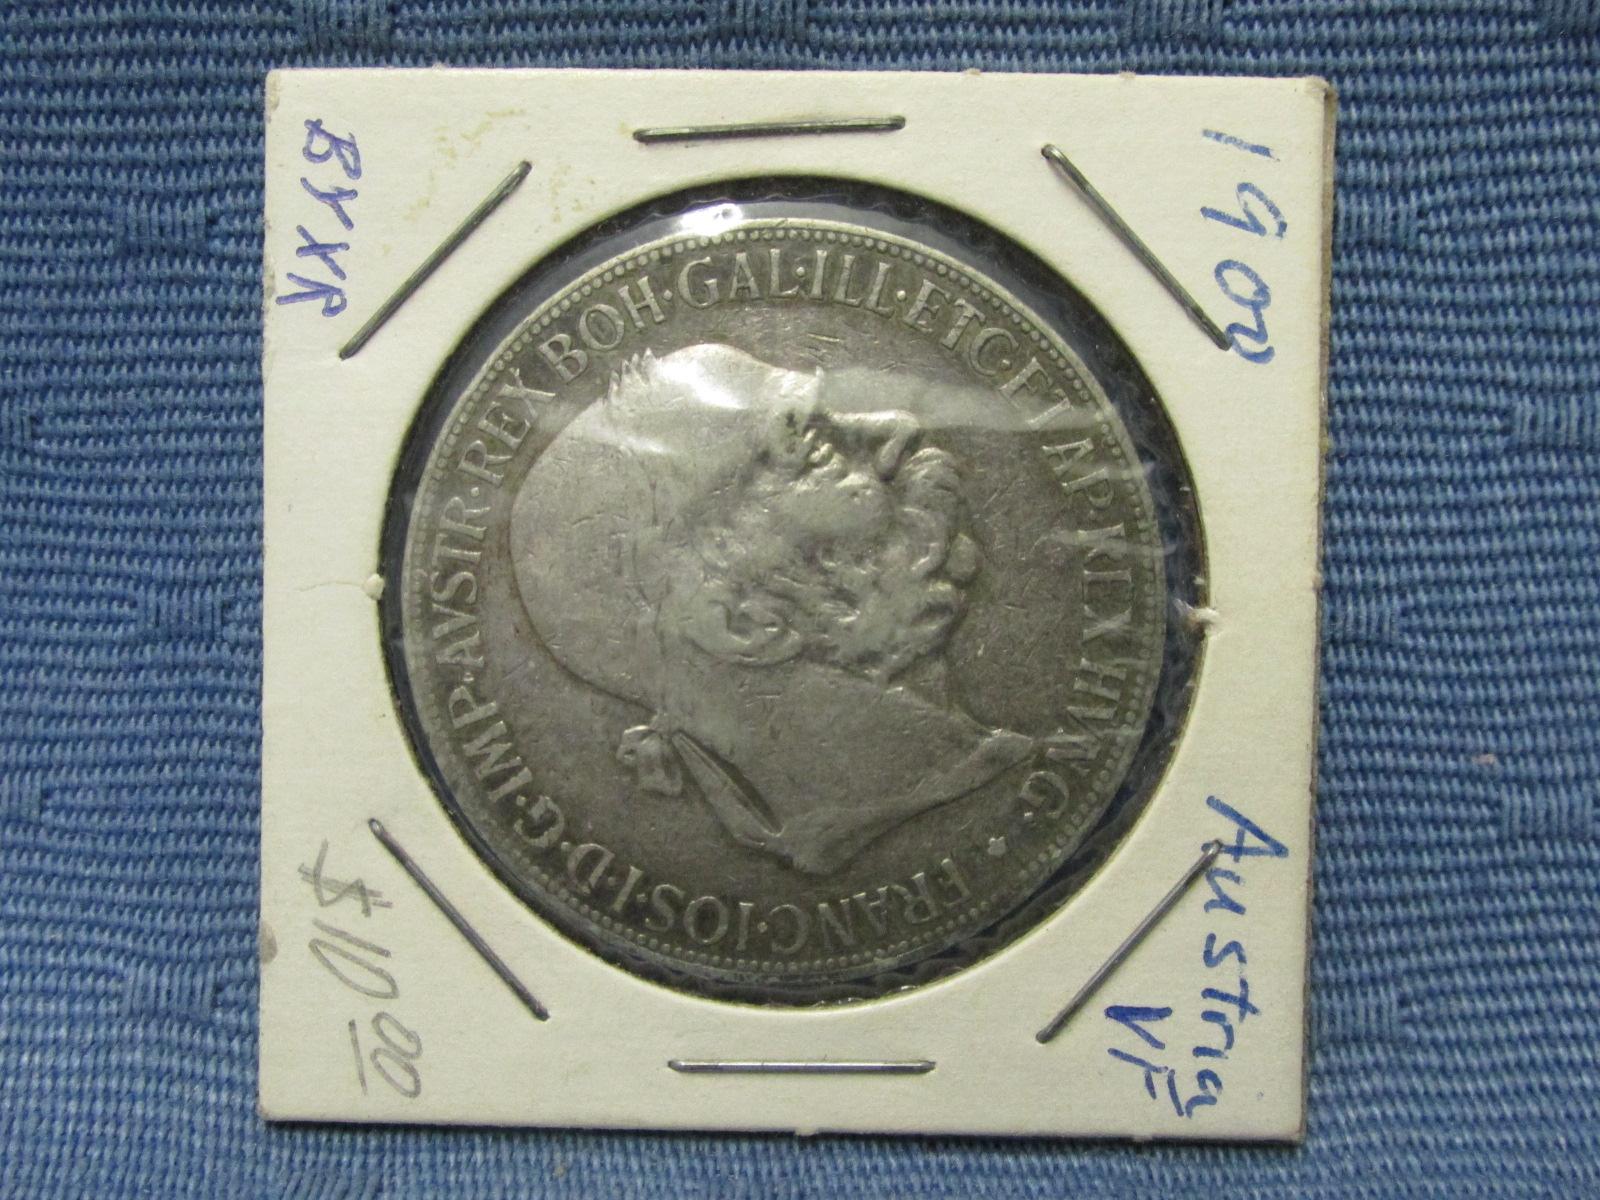 1900 5 Corona Austrian Coin – 90% Silver – As shown